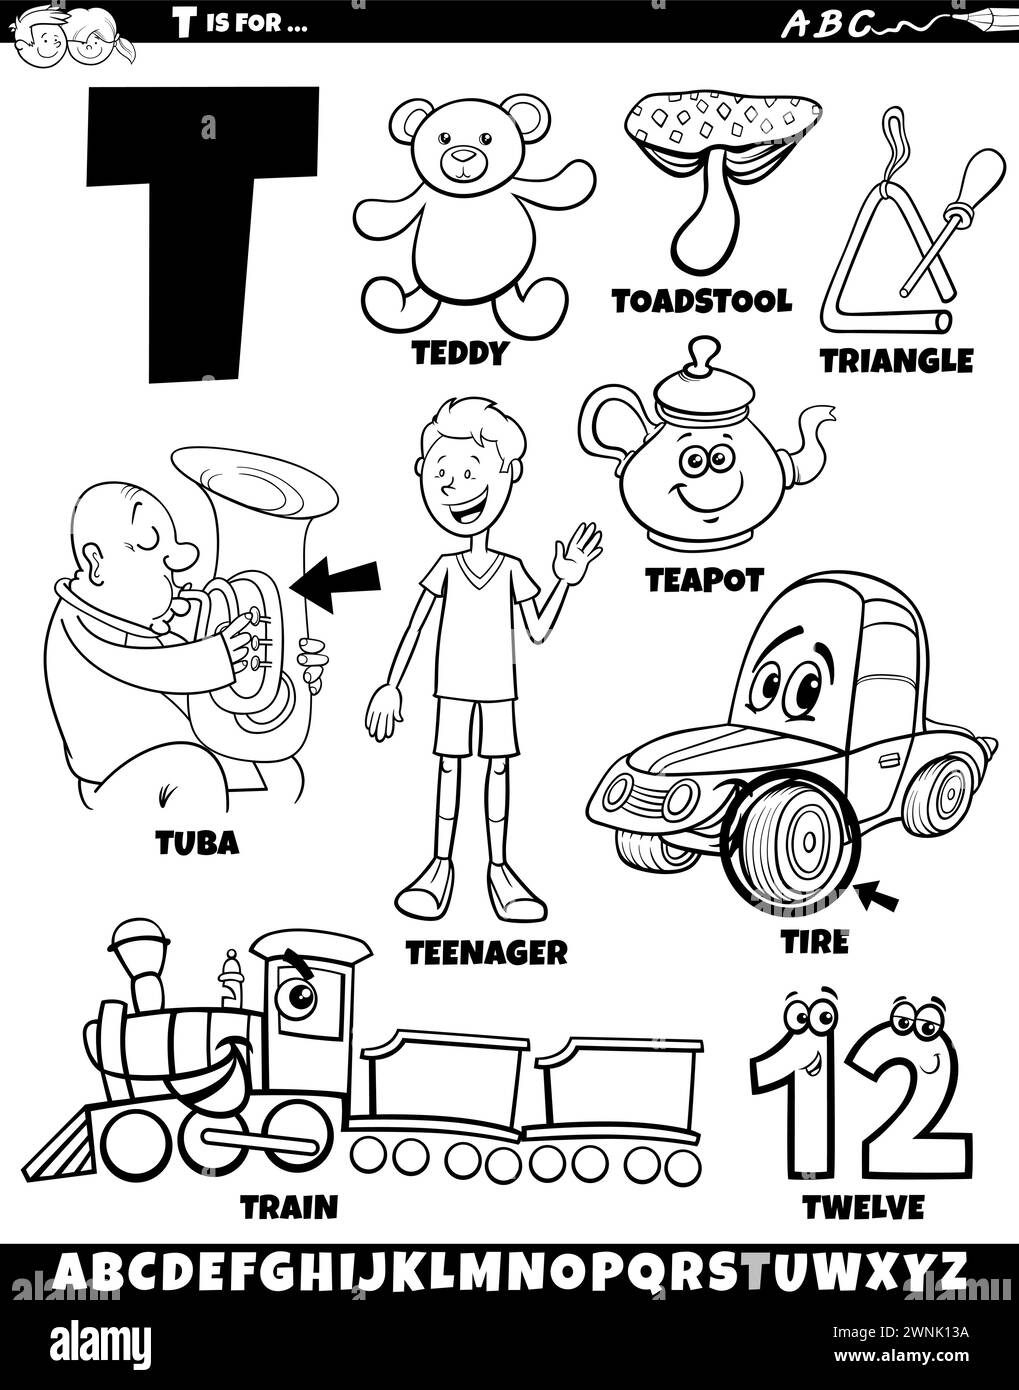 Illustration de dessin animé d'objets et de caractères définis pour la page de coloriage de la lettre T. Illustration de Vecteur